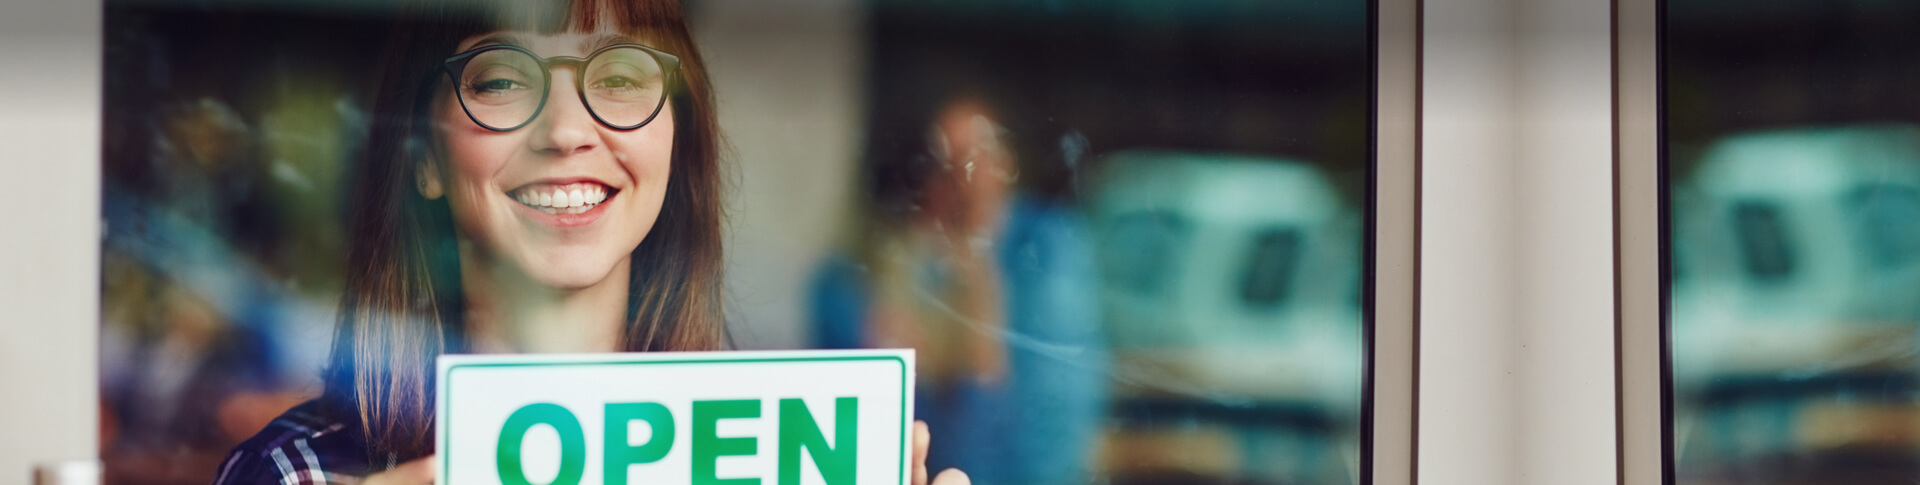 Frau mit Brille hängt Open-Schild in Ladentür